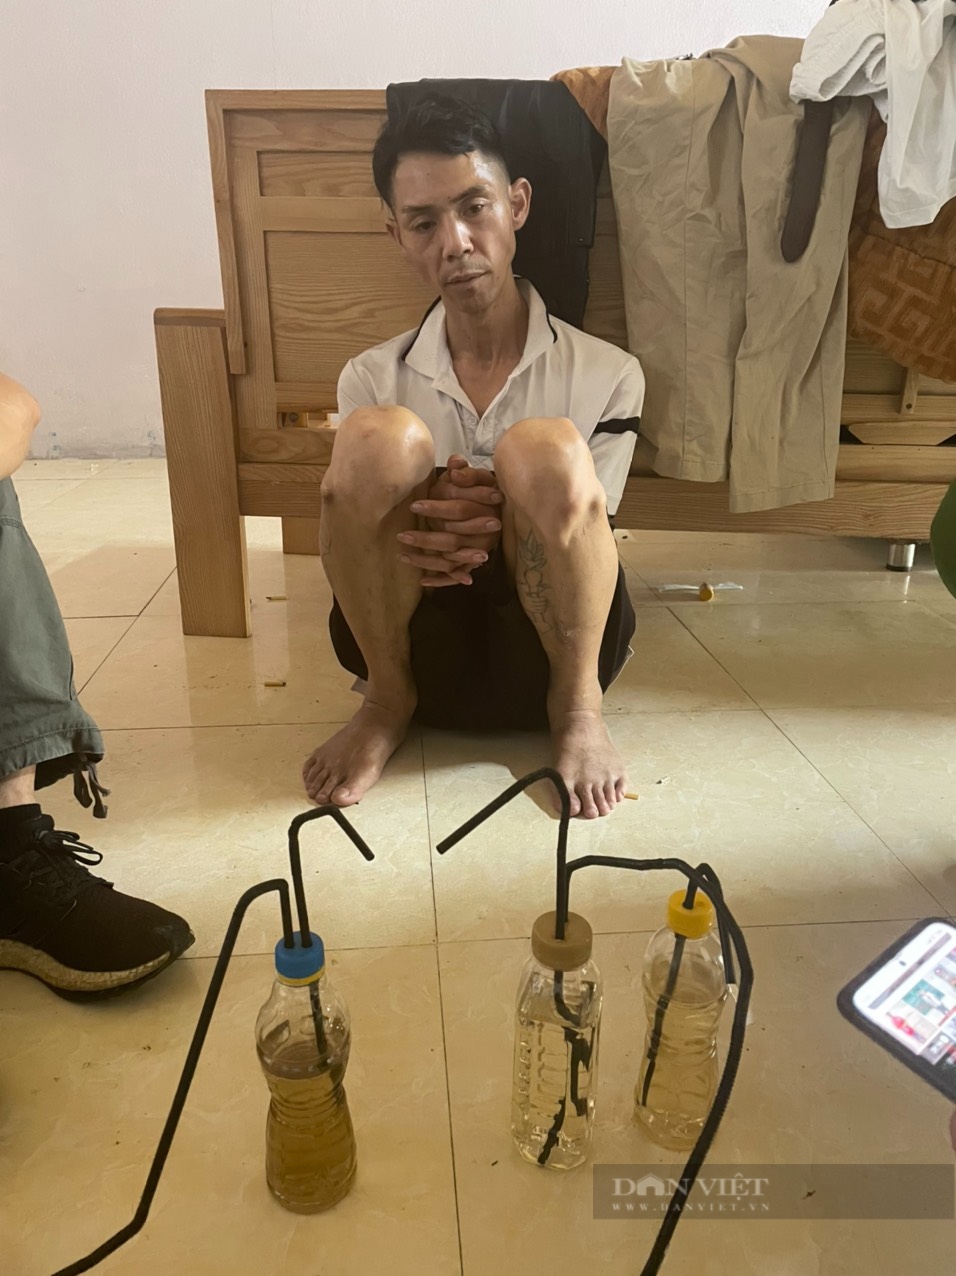 Lào Cai: Bắt giữ đối tượng vận chuyển trái phép 10 bánh heroin - Ảnh 1.